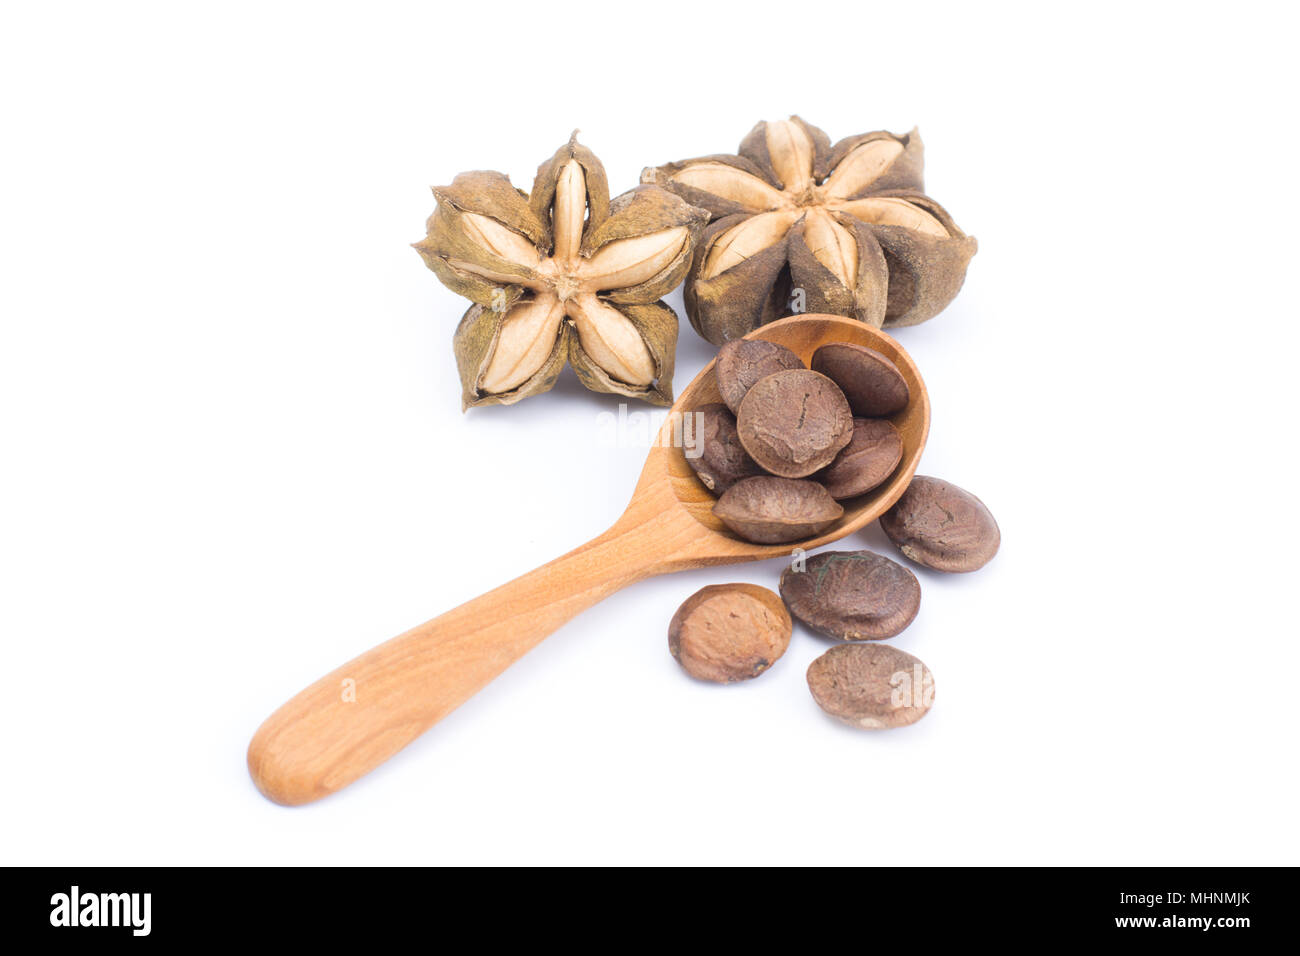 Plukenetia volubilis o sacha inchi arachide semi in cucchiaio di legno isolato su sfondo bianco Foto Stock